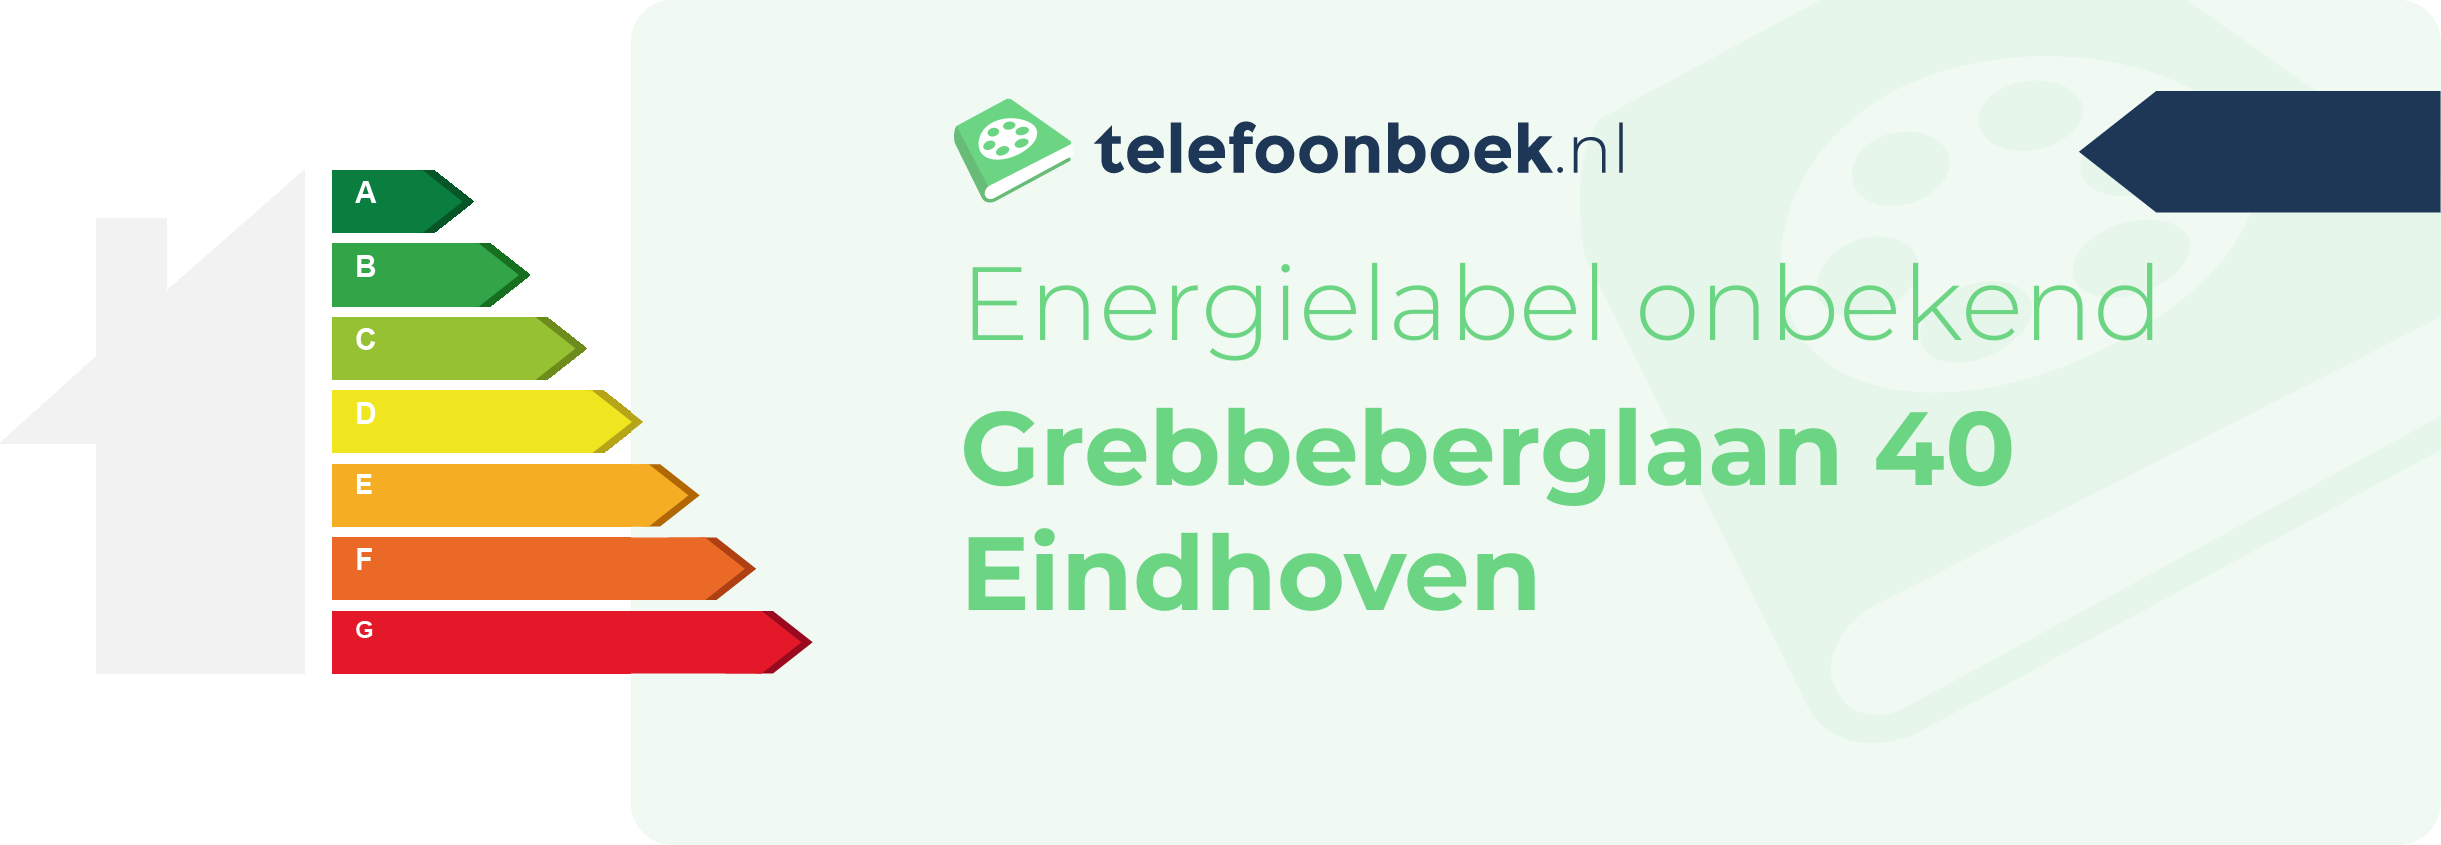 Energielabel Grebbeberglaan 40 Eindhoven